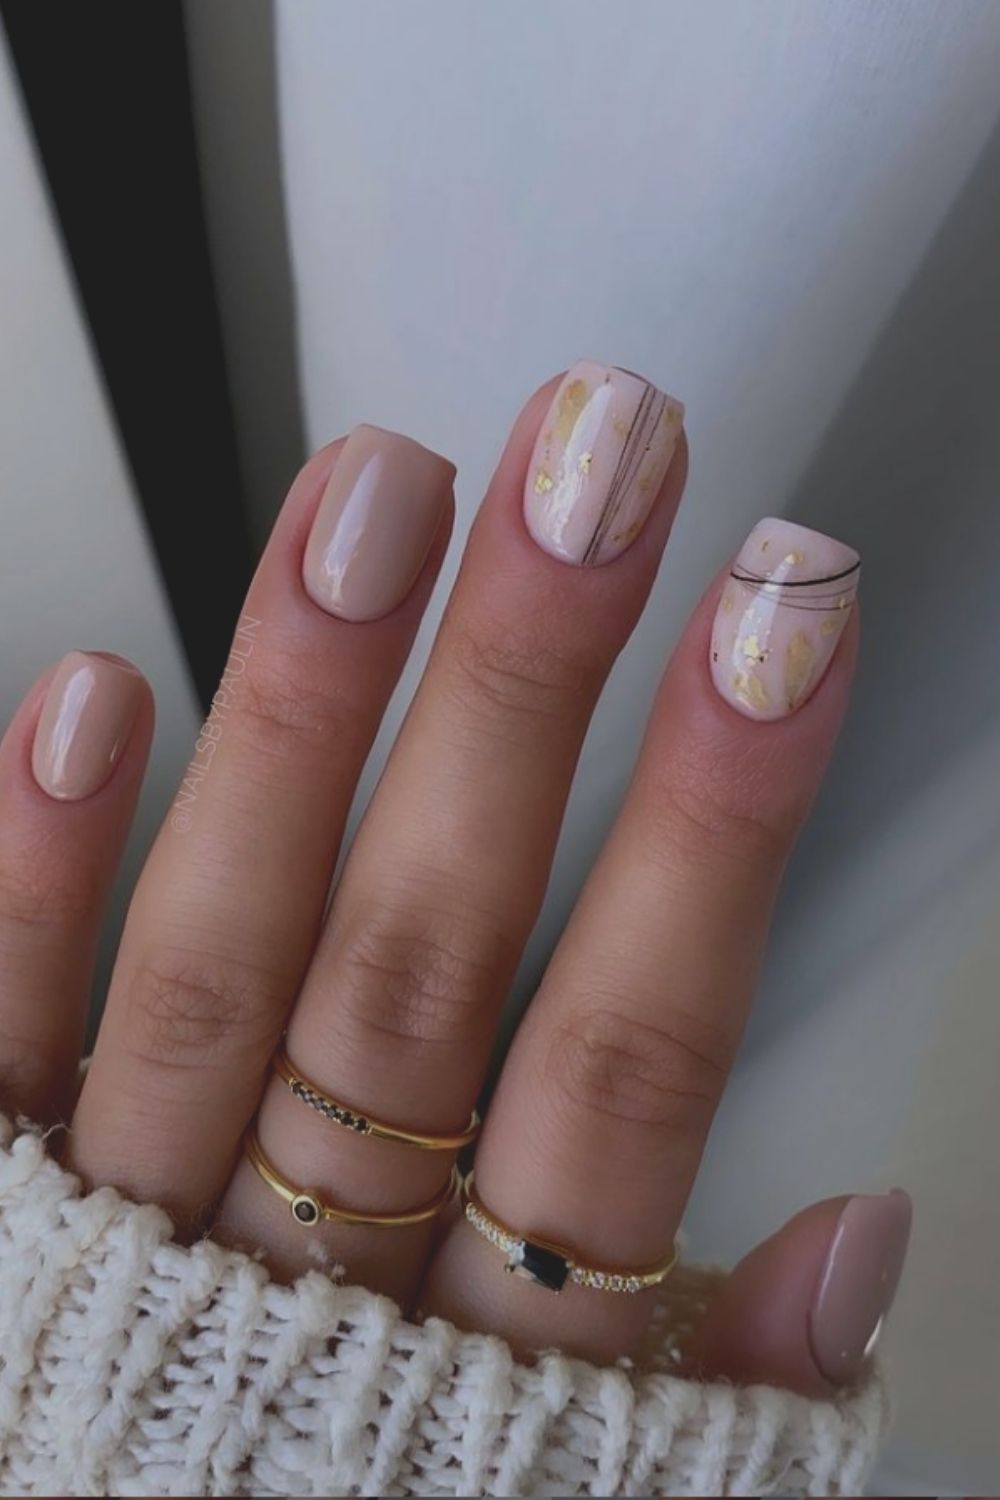 Glitter nail designs